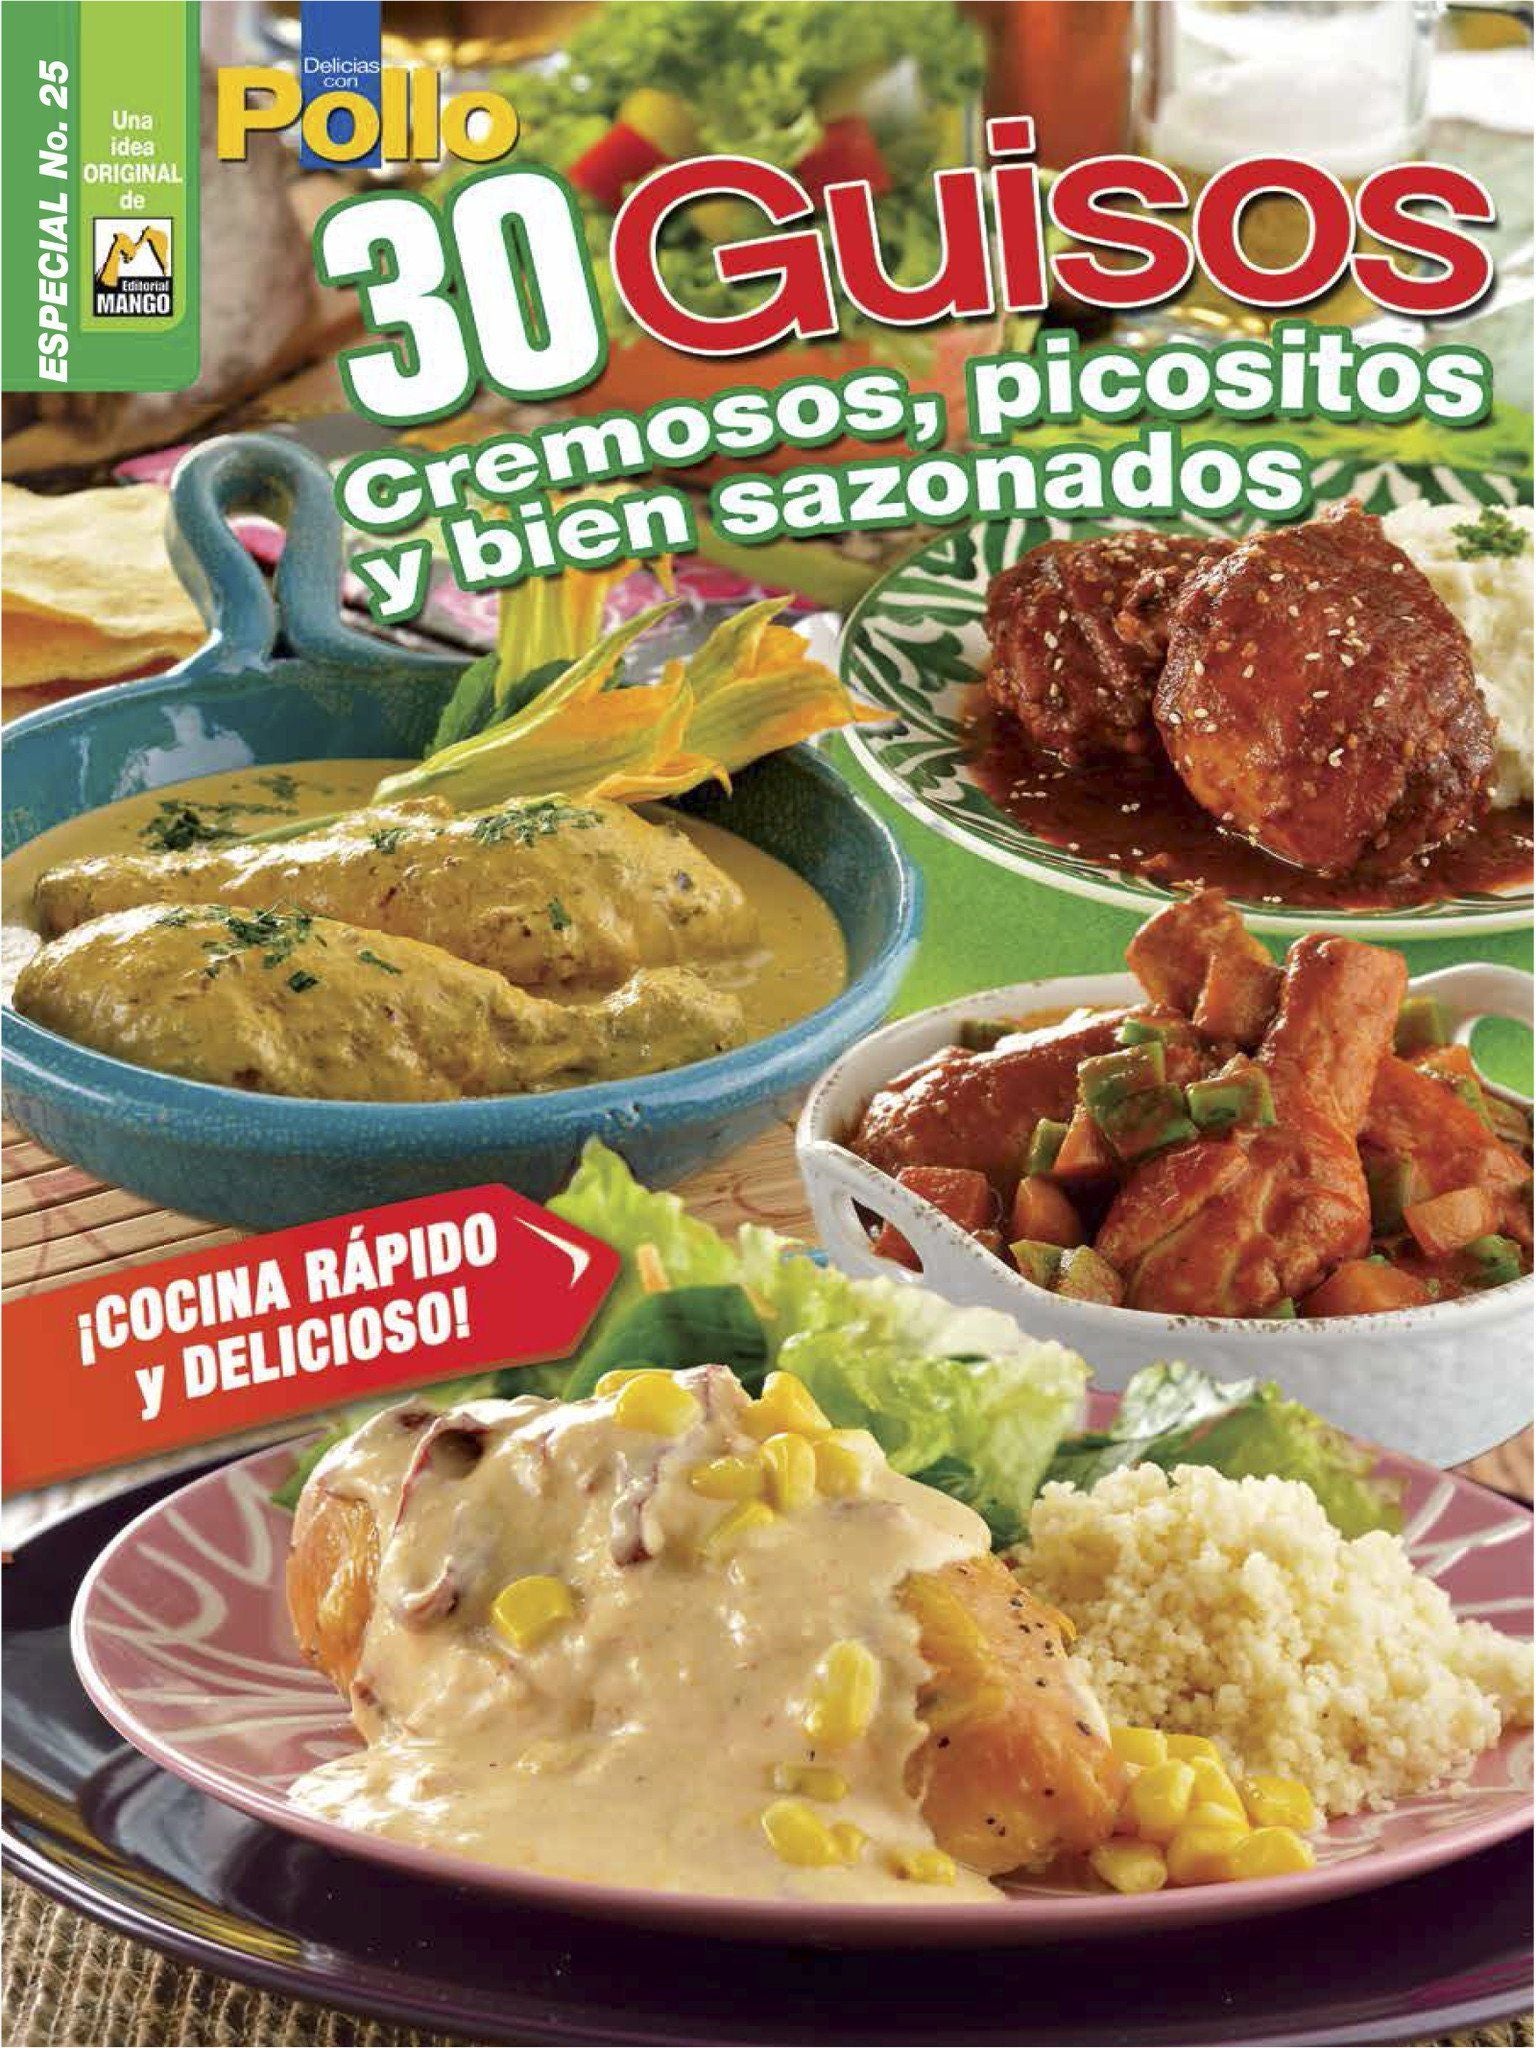 Delicias con Pollo Especial 25 - 30 Guisos cremosos, picositos y bien sazonados - Formato Digital - ToukanMango